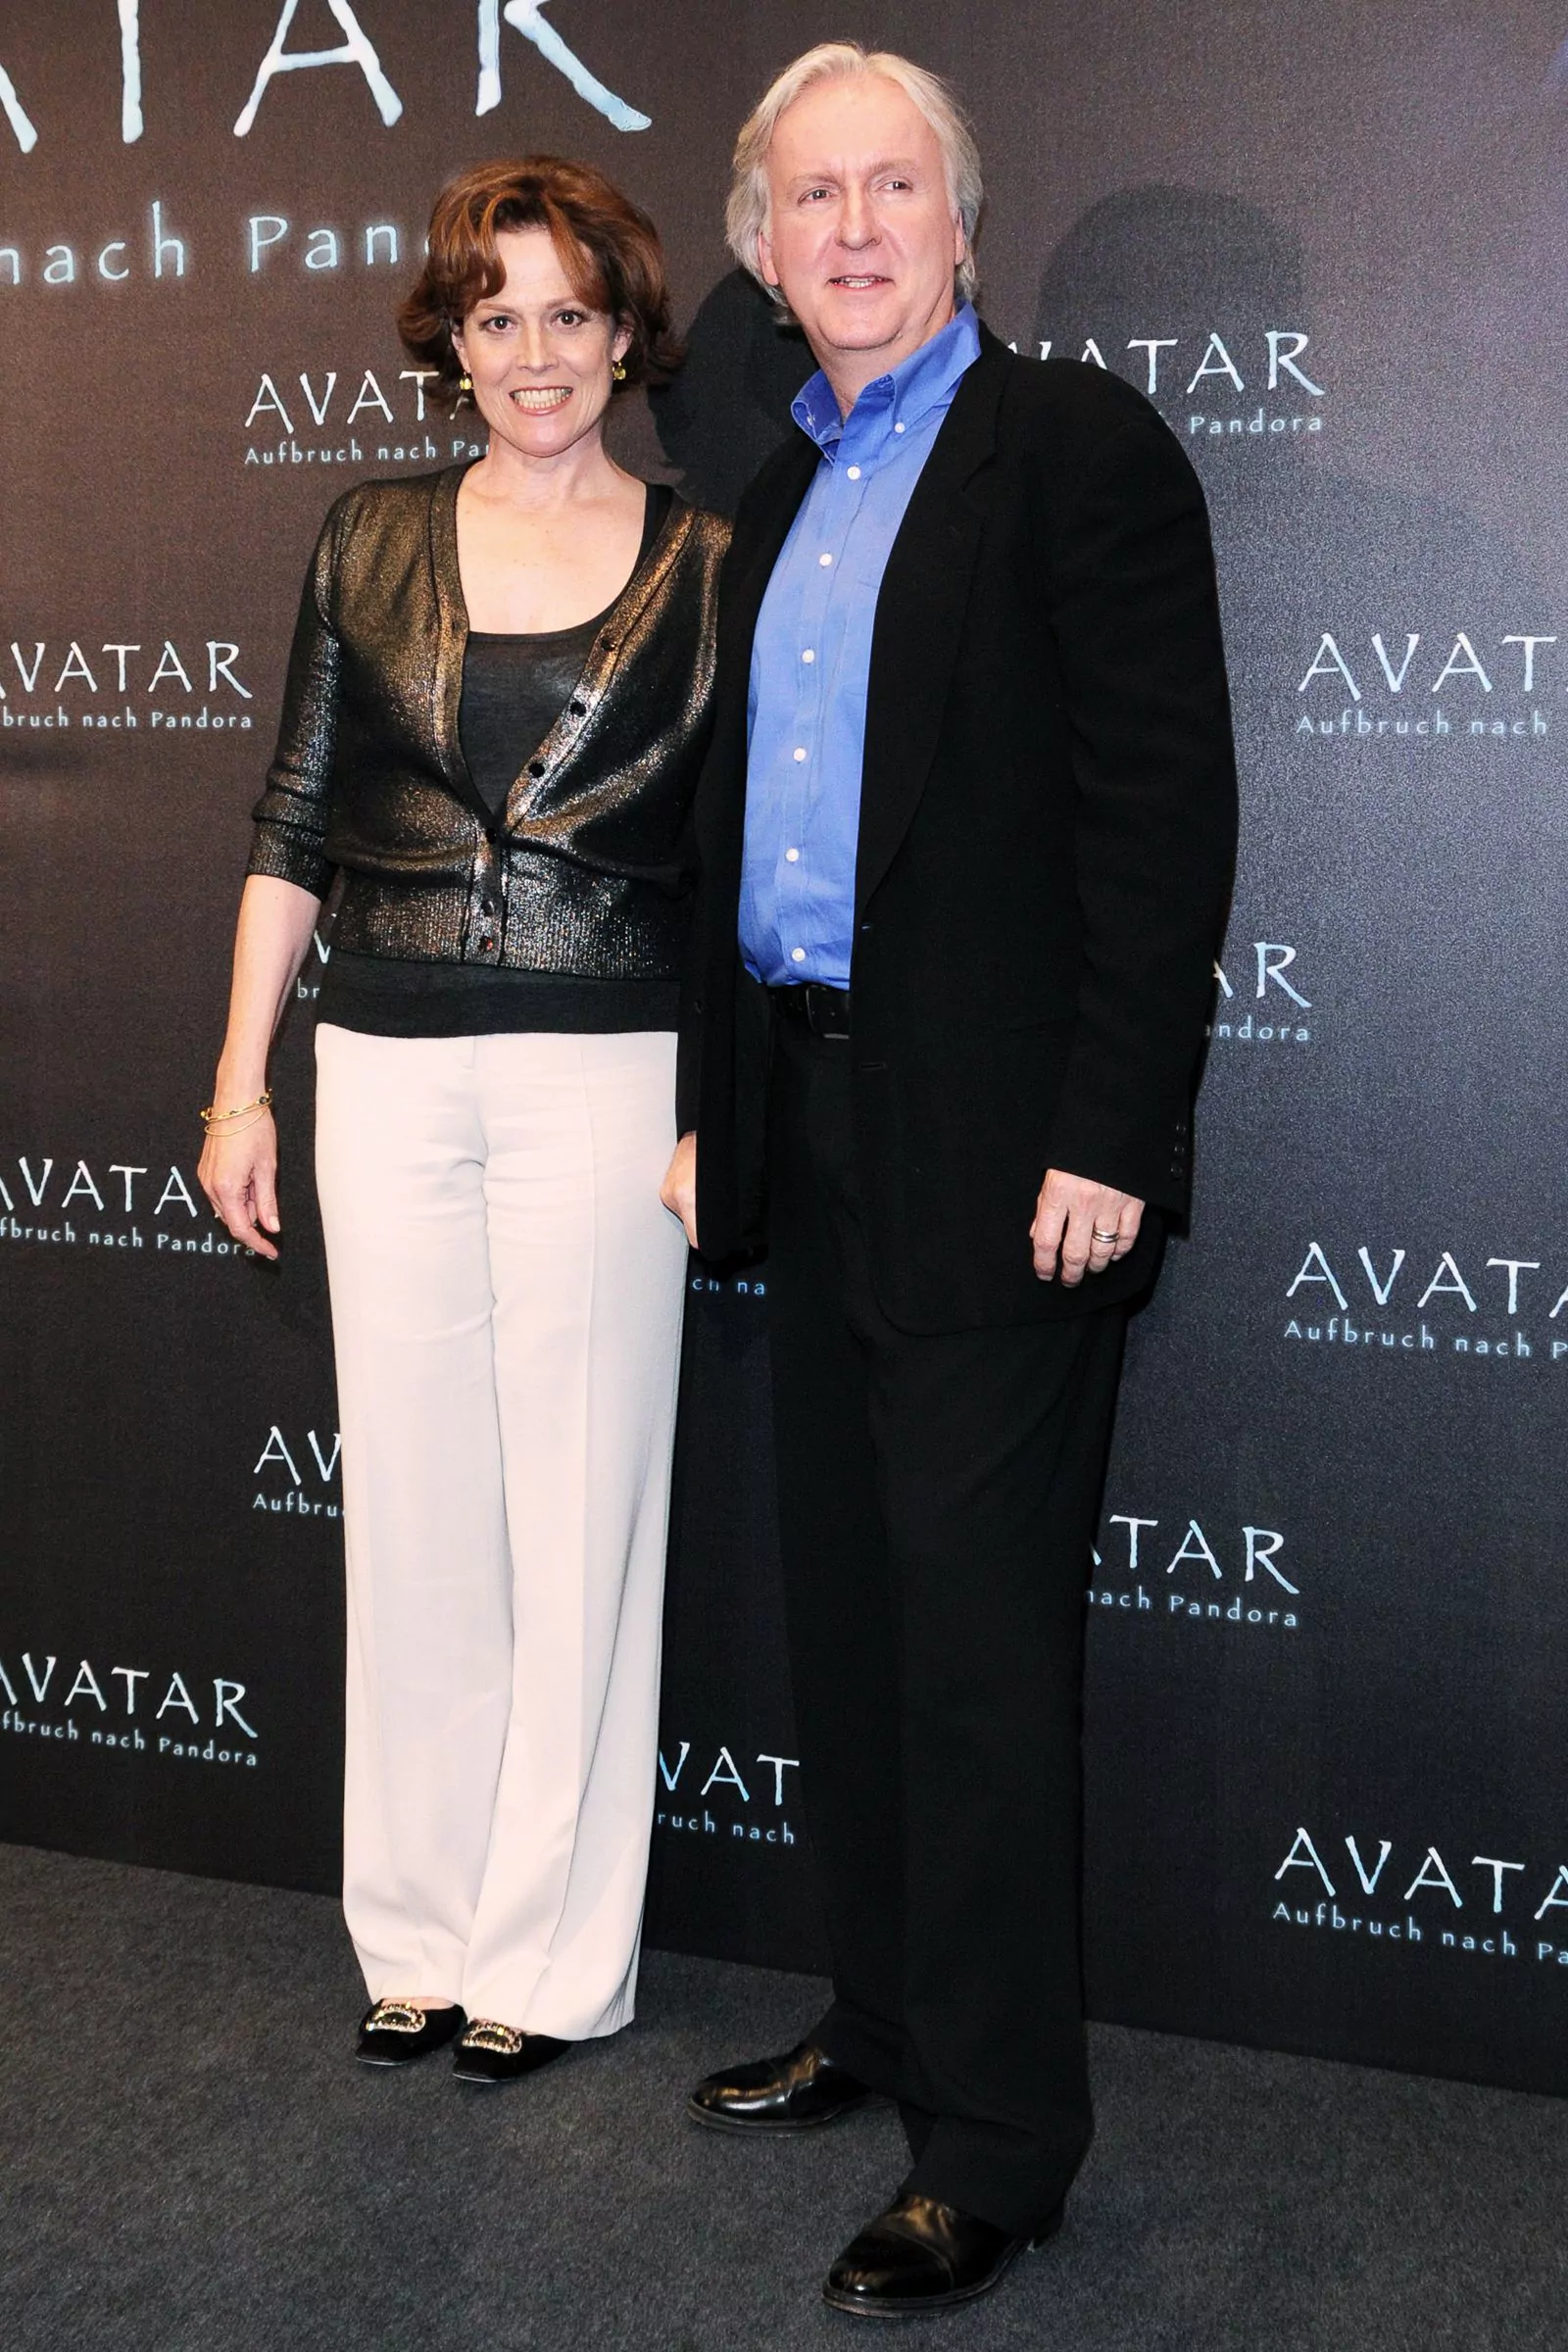 Сигурни Уивер и Джеймс Кэмерон на фотоколле фильма «Аватар» в Берлине, 8 декабря 2009 г.